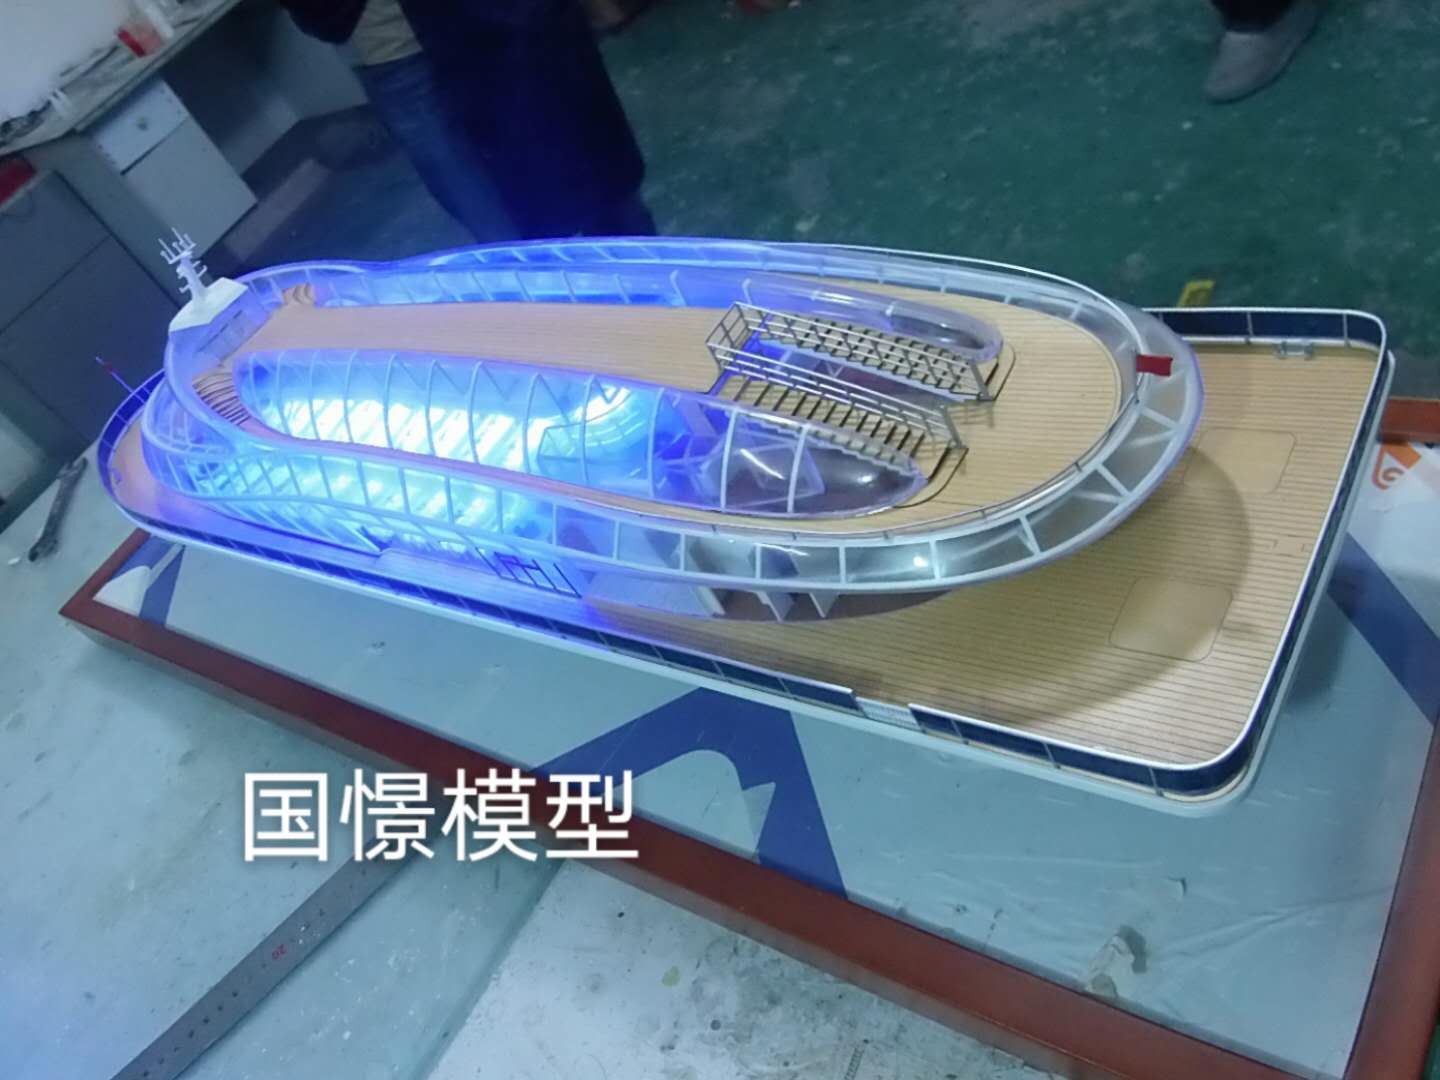 龙港市船舶模型